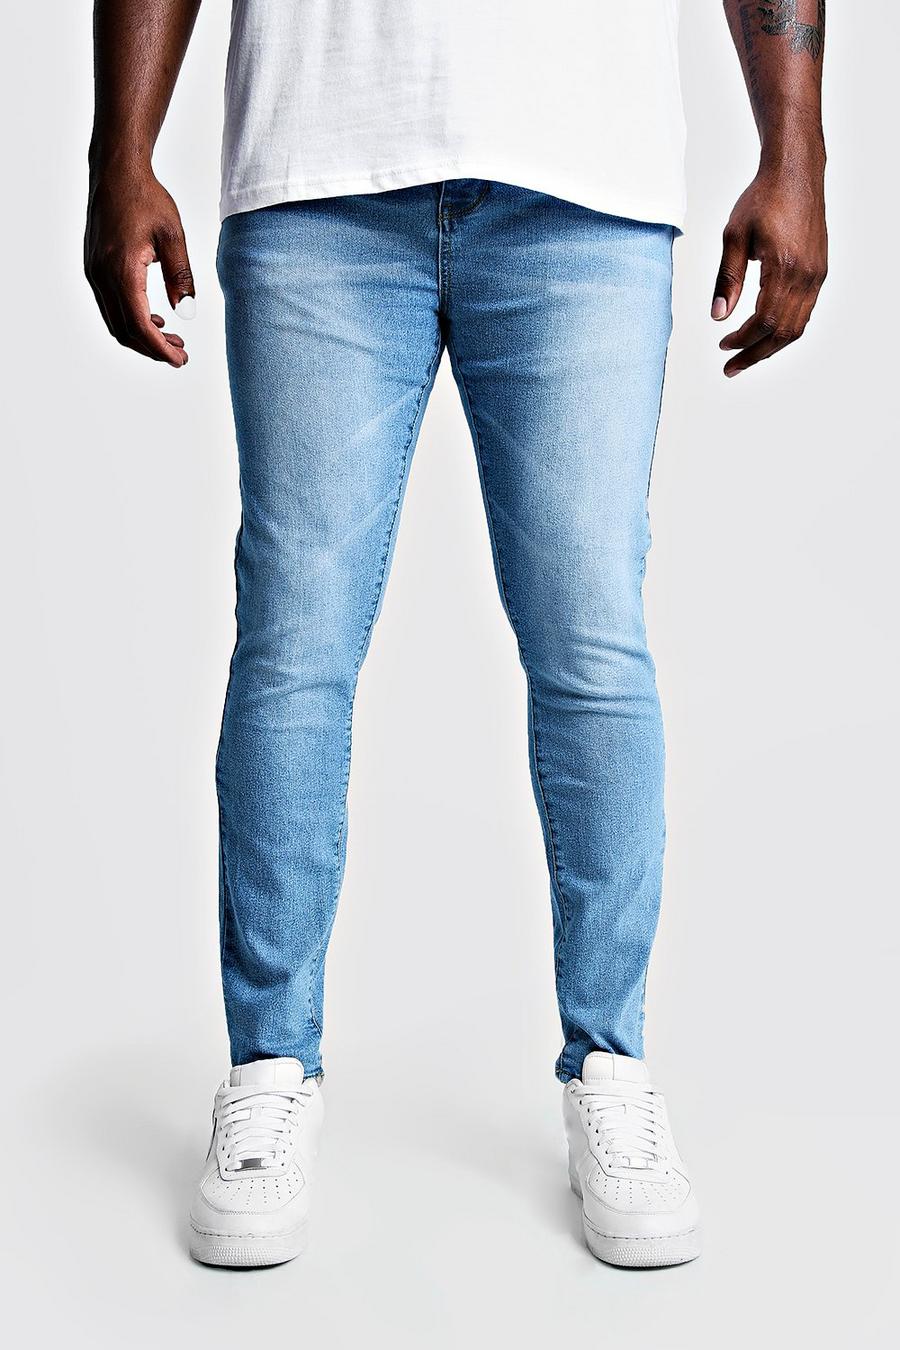 כחול חיוור סקיני ג'ינס לגברים גדולים וגבוהים image number 1